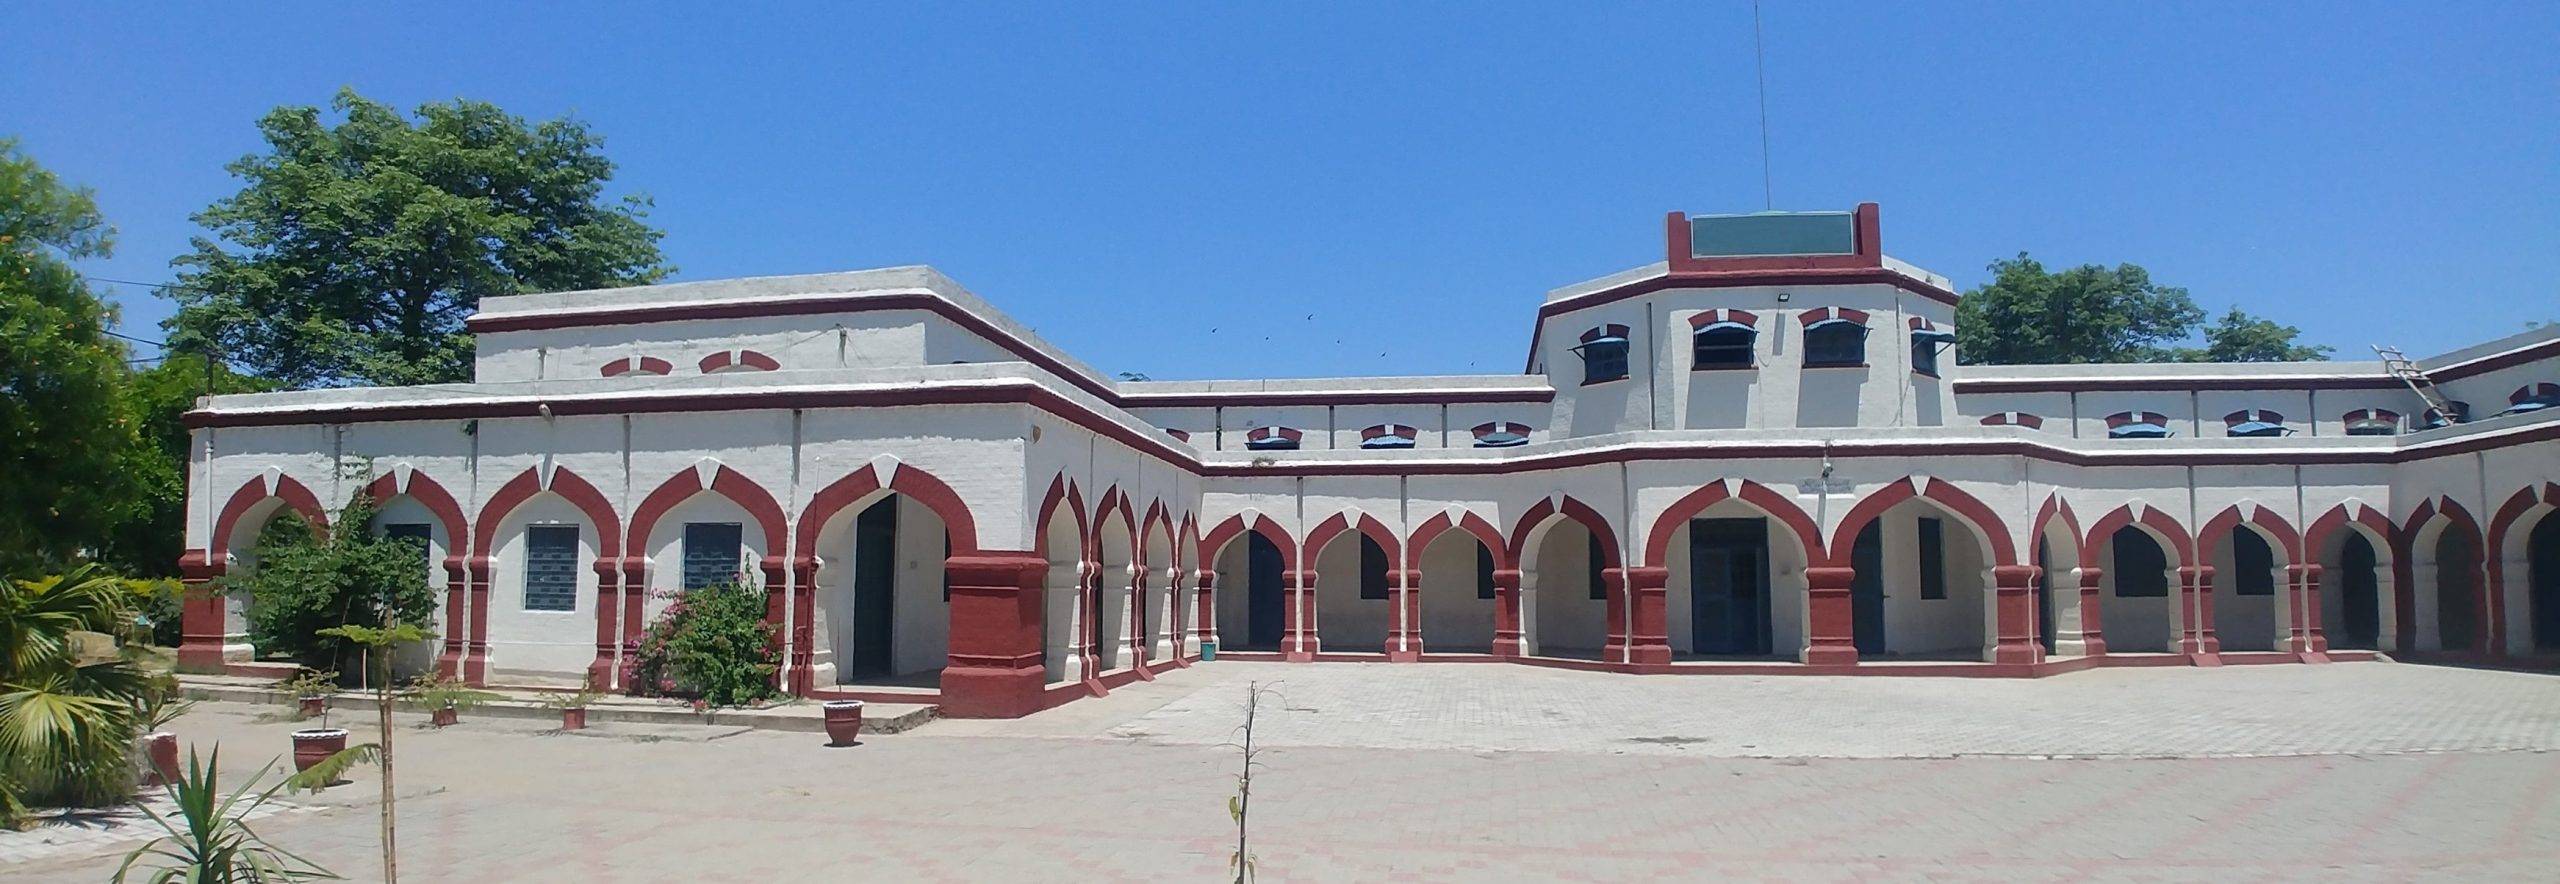 University of chakwal